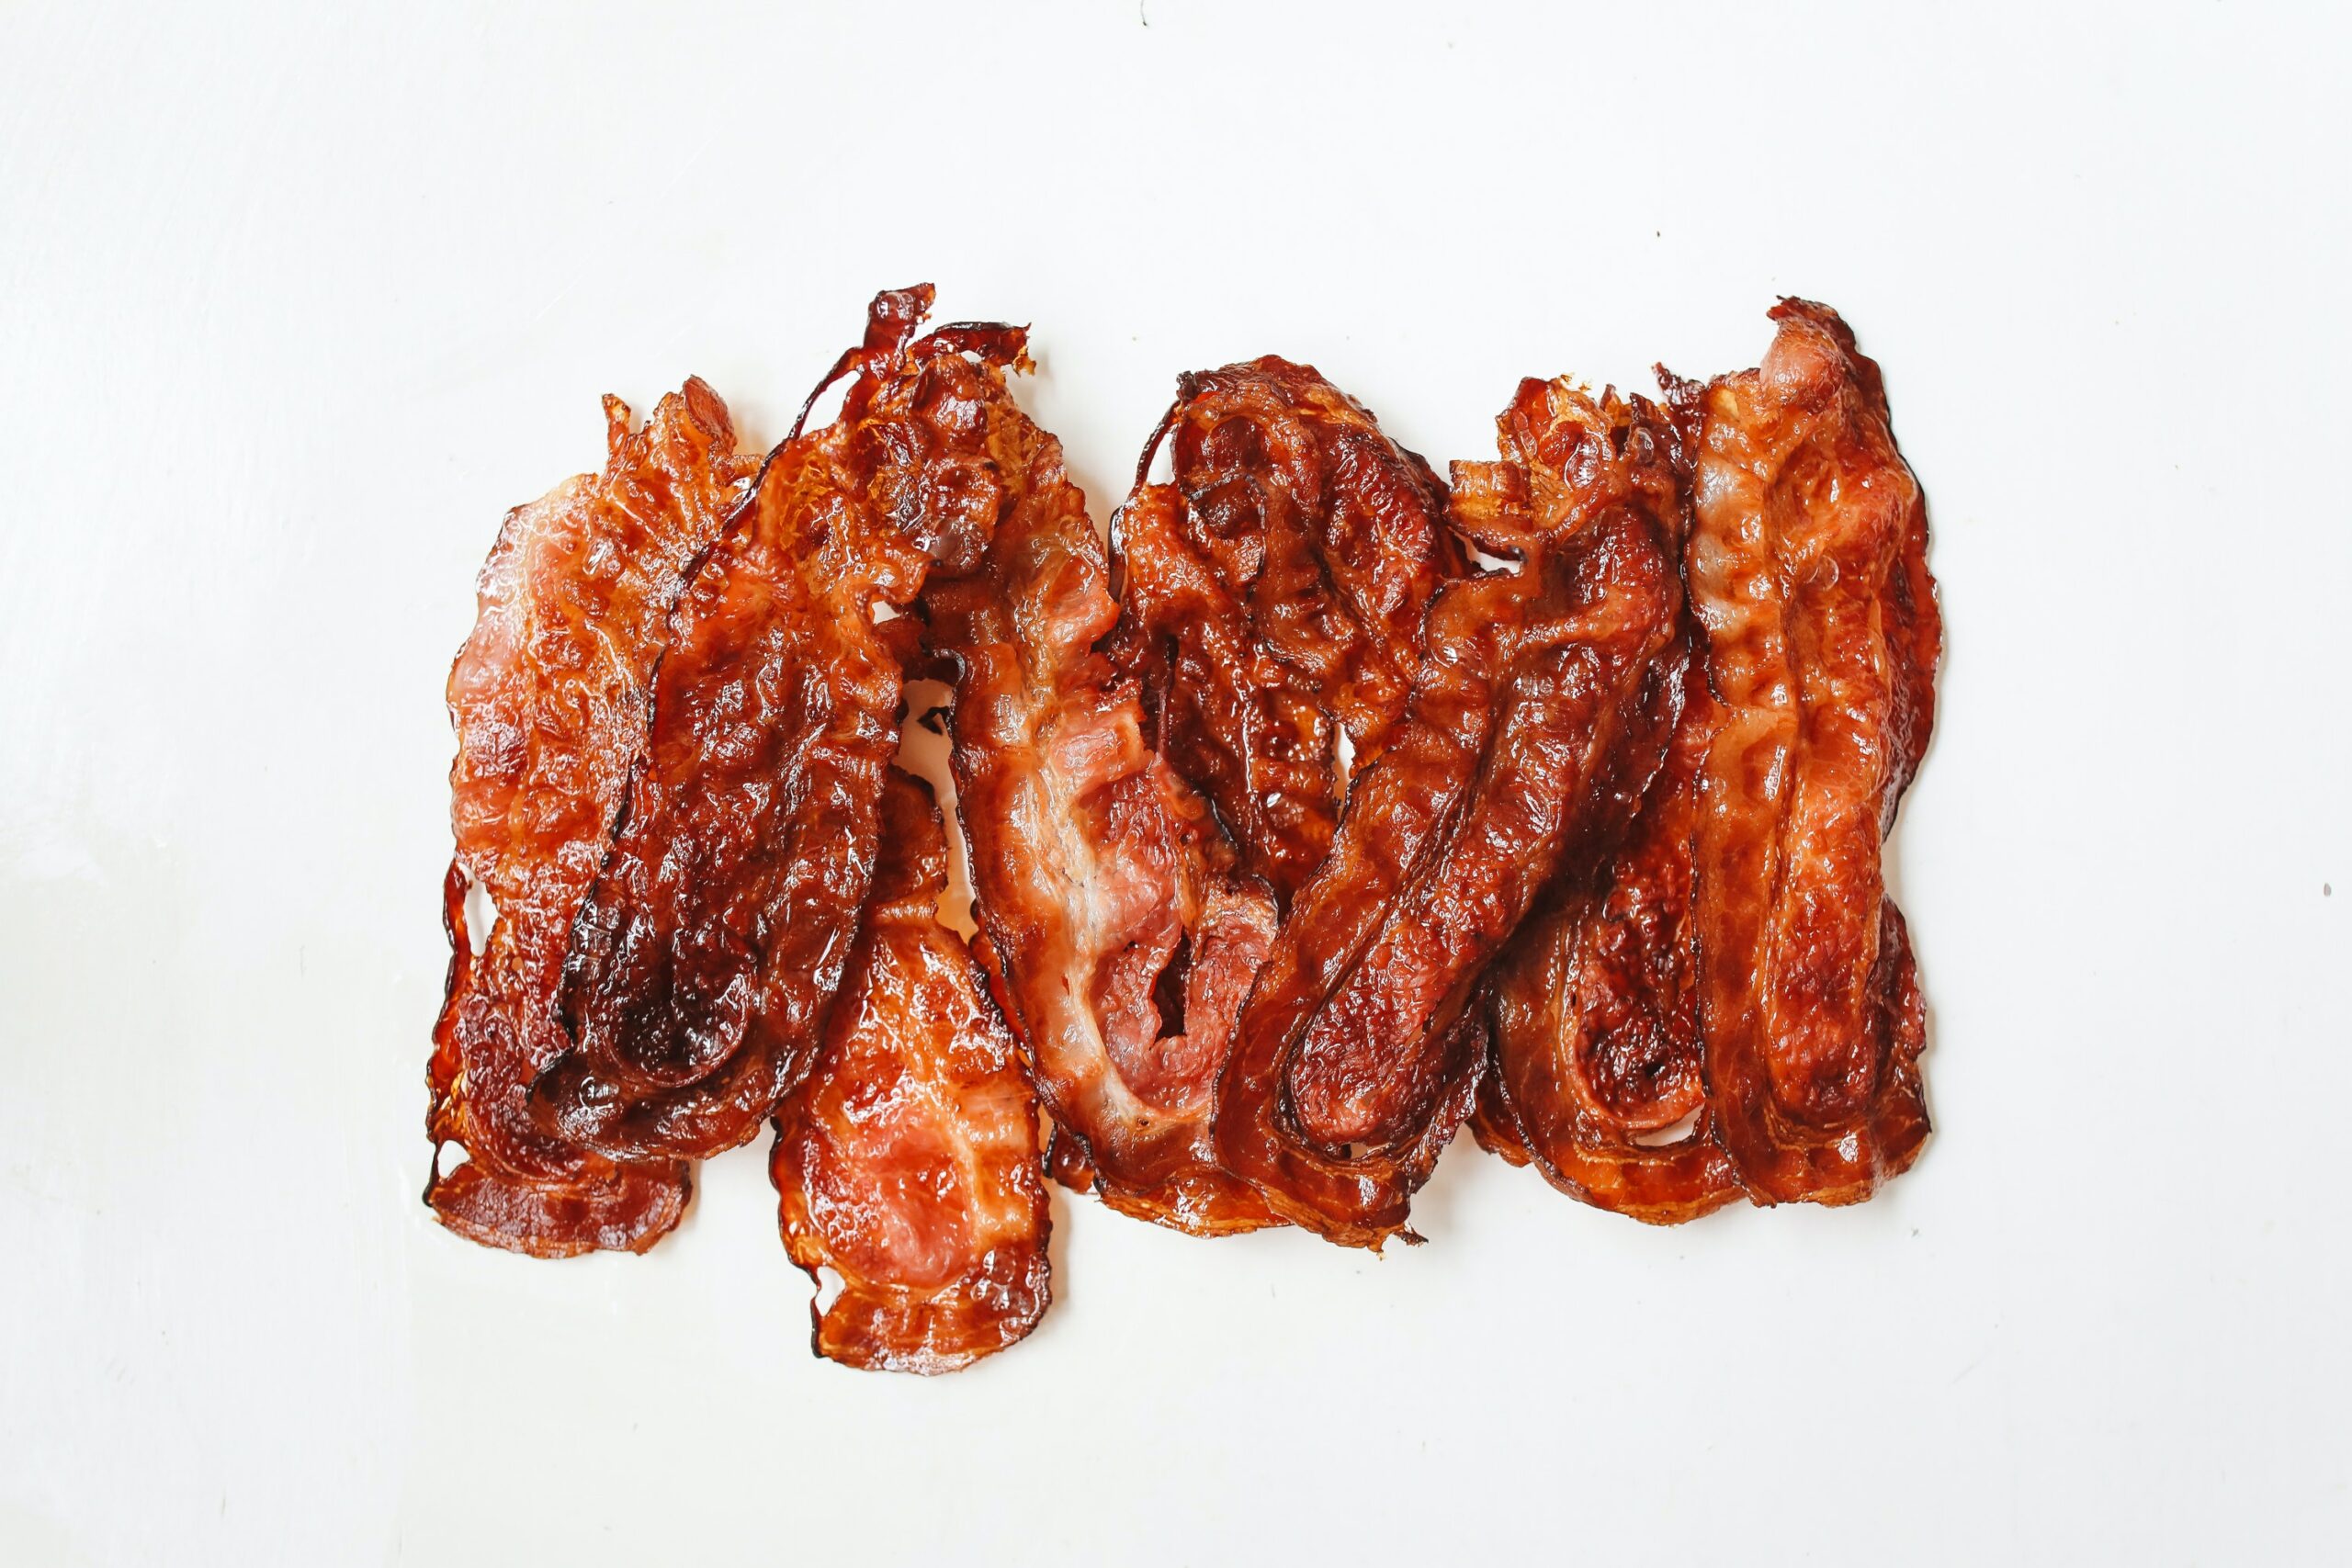 seven pieces of bacon